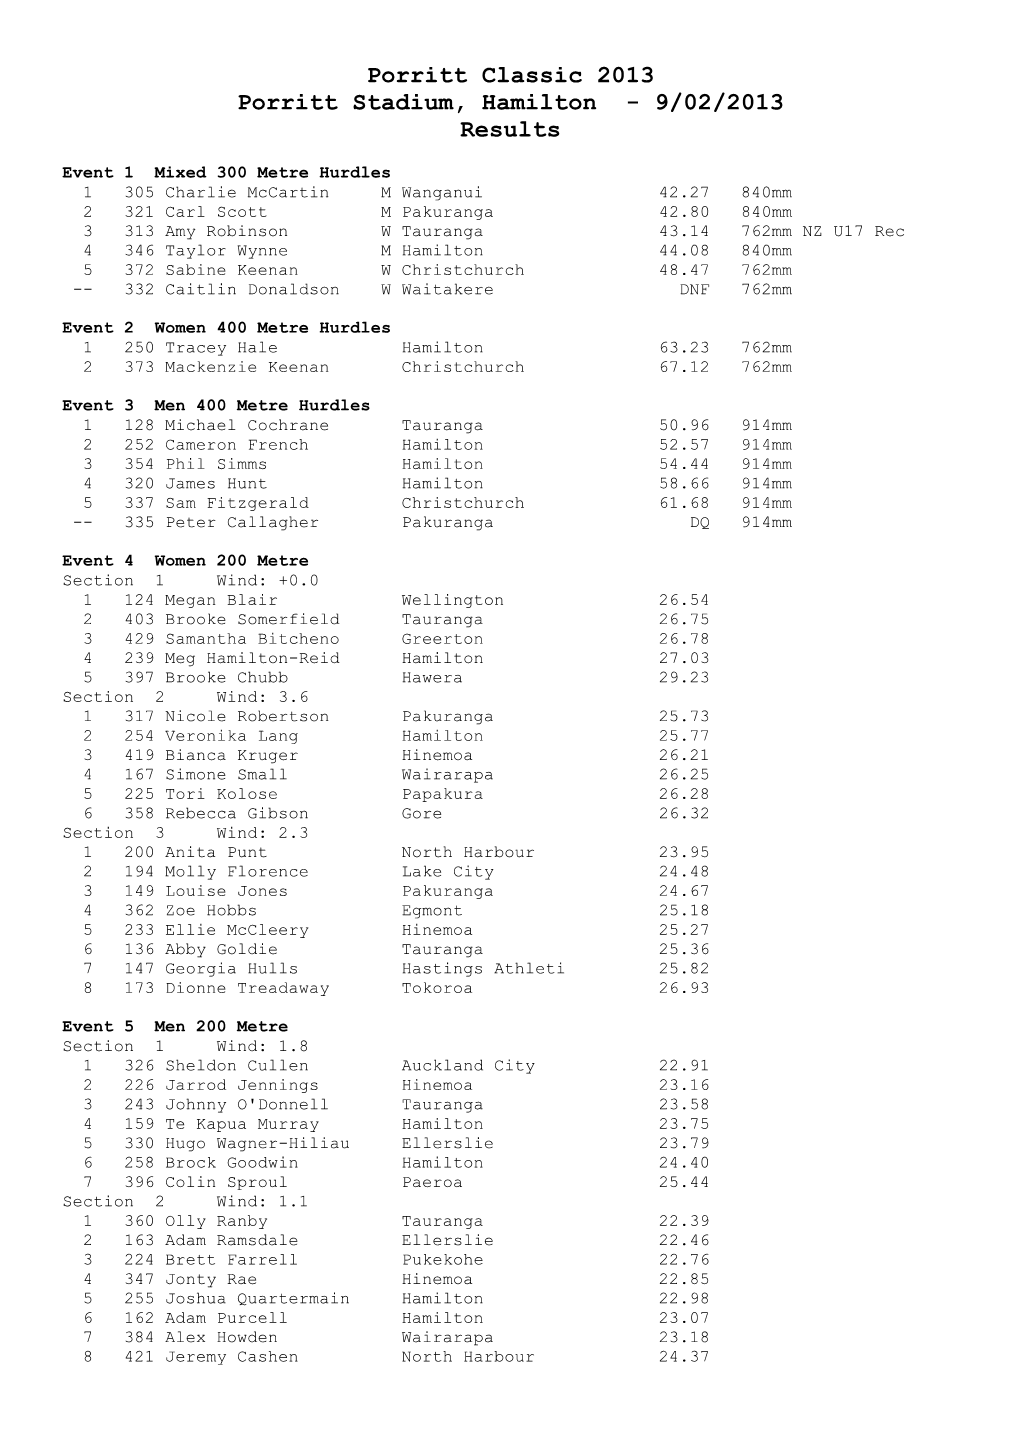 Porritt Classic 2013 Porritt Stadium, Hamilton - 9/02/2013 Results